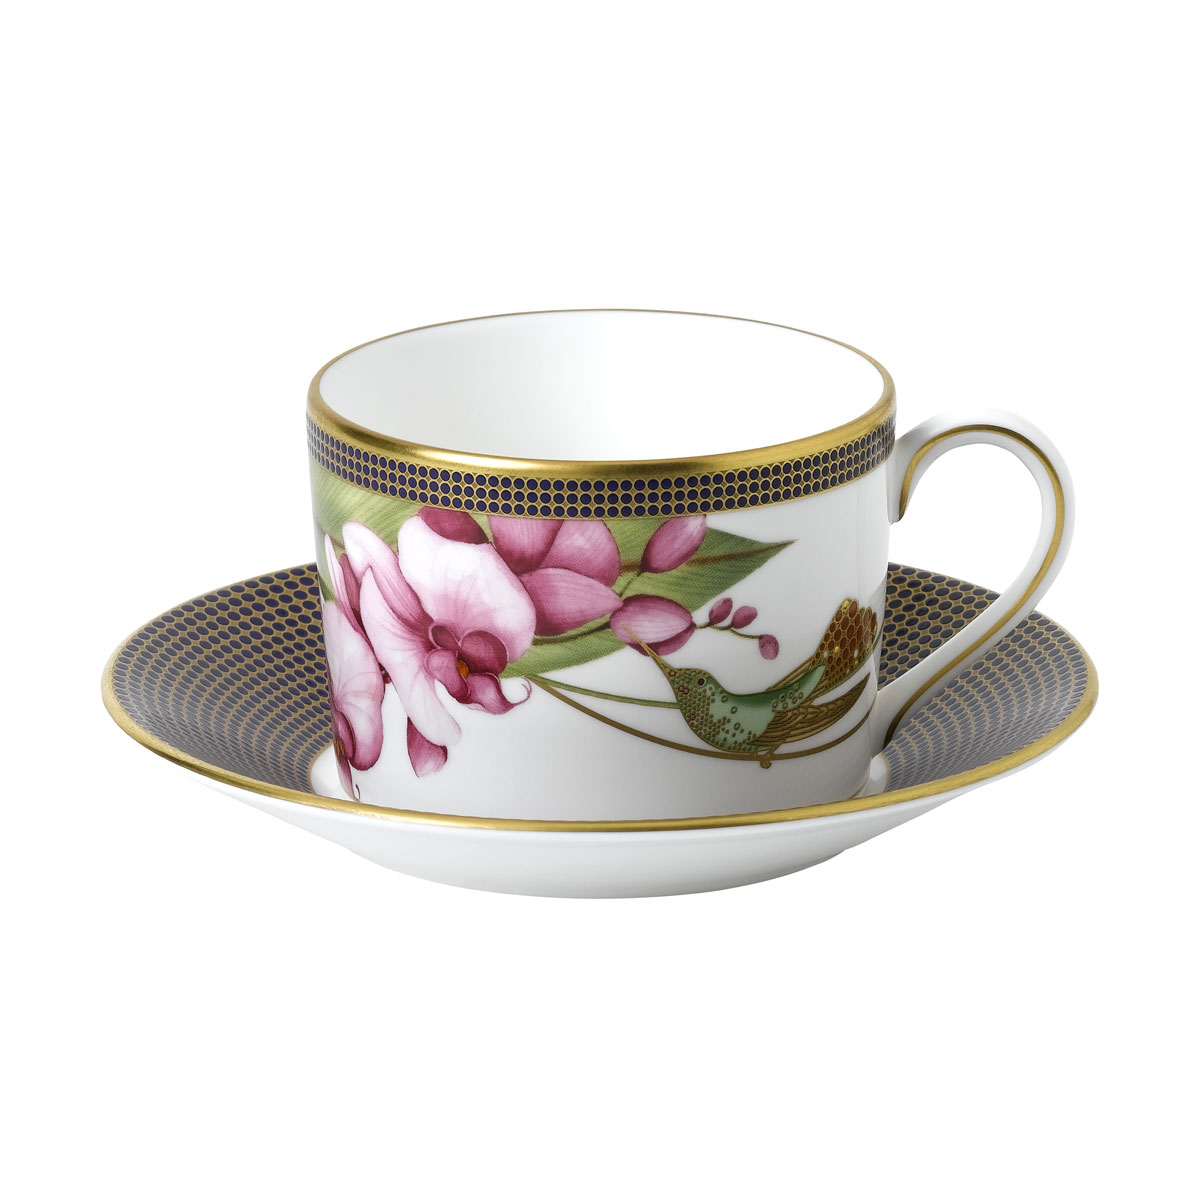 Wedgwood Hummingbird Tea Cup and Saucer